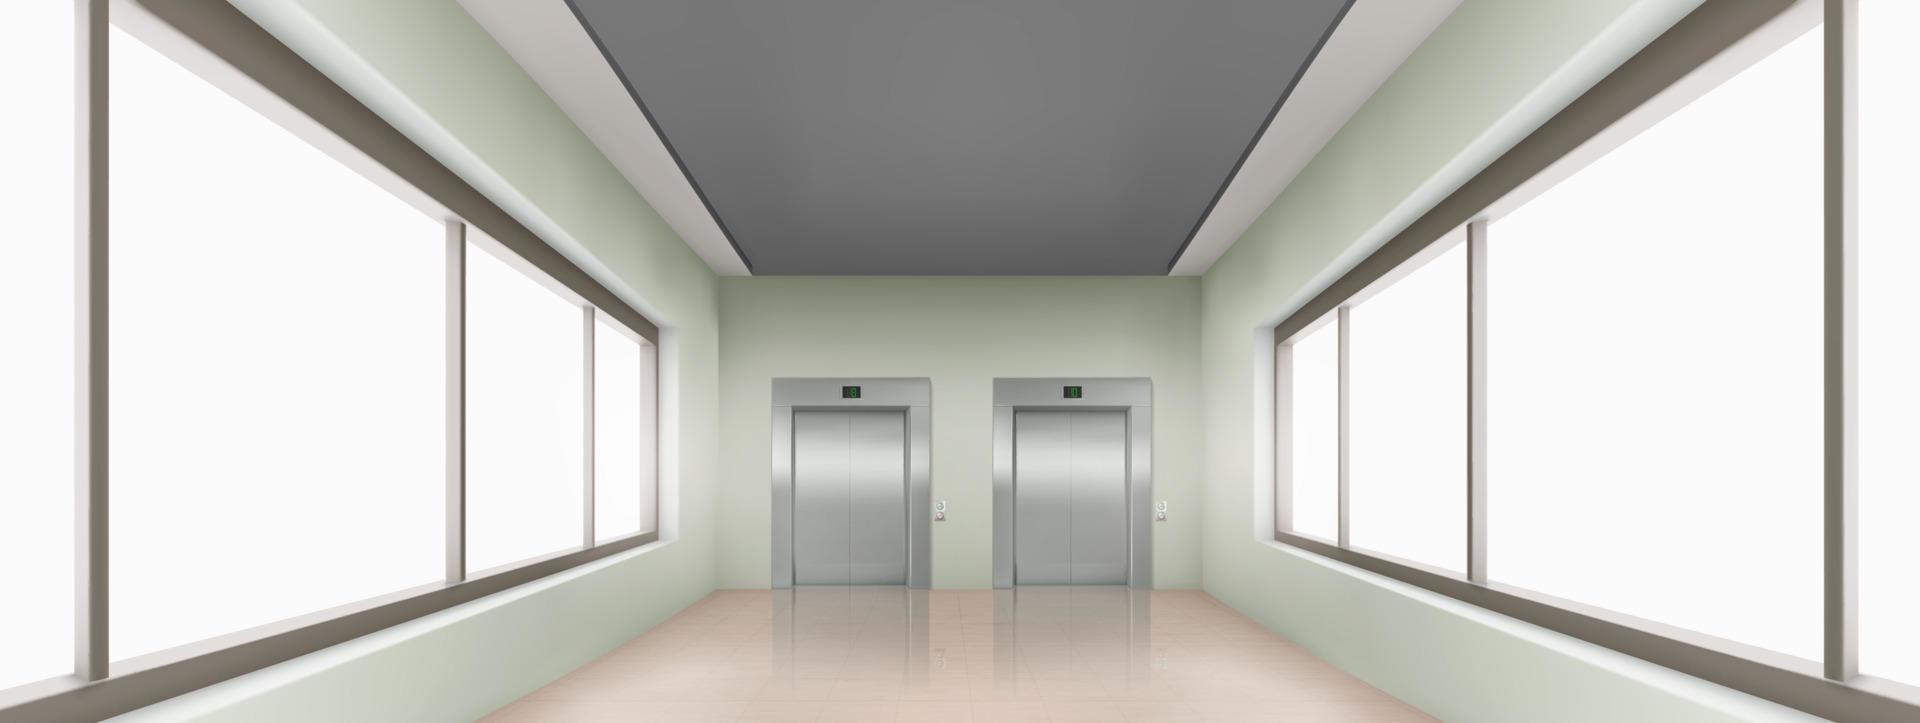 realistico scuola corridoio interno con finestre vettore